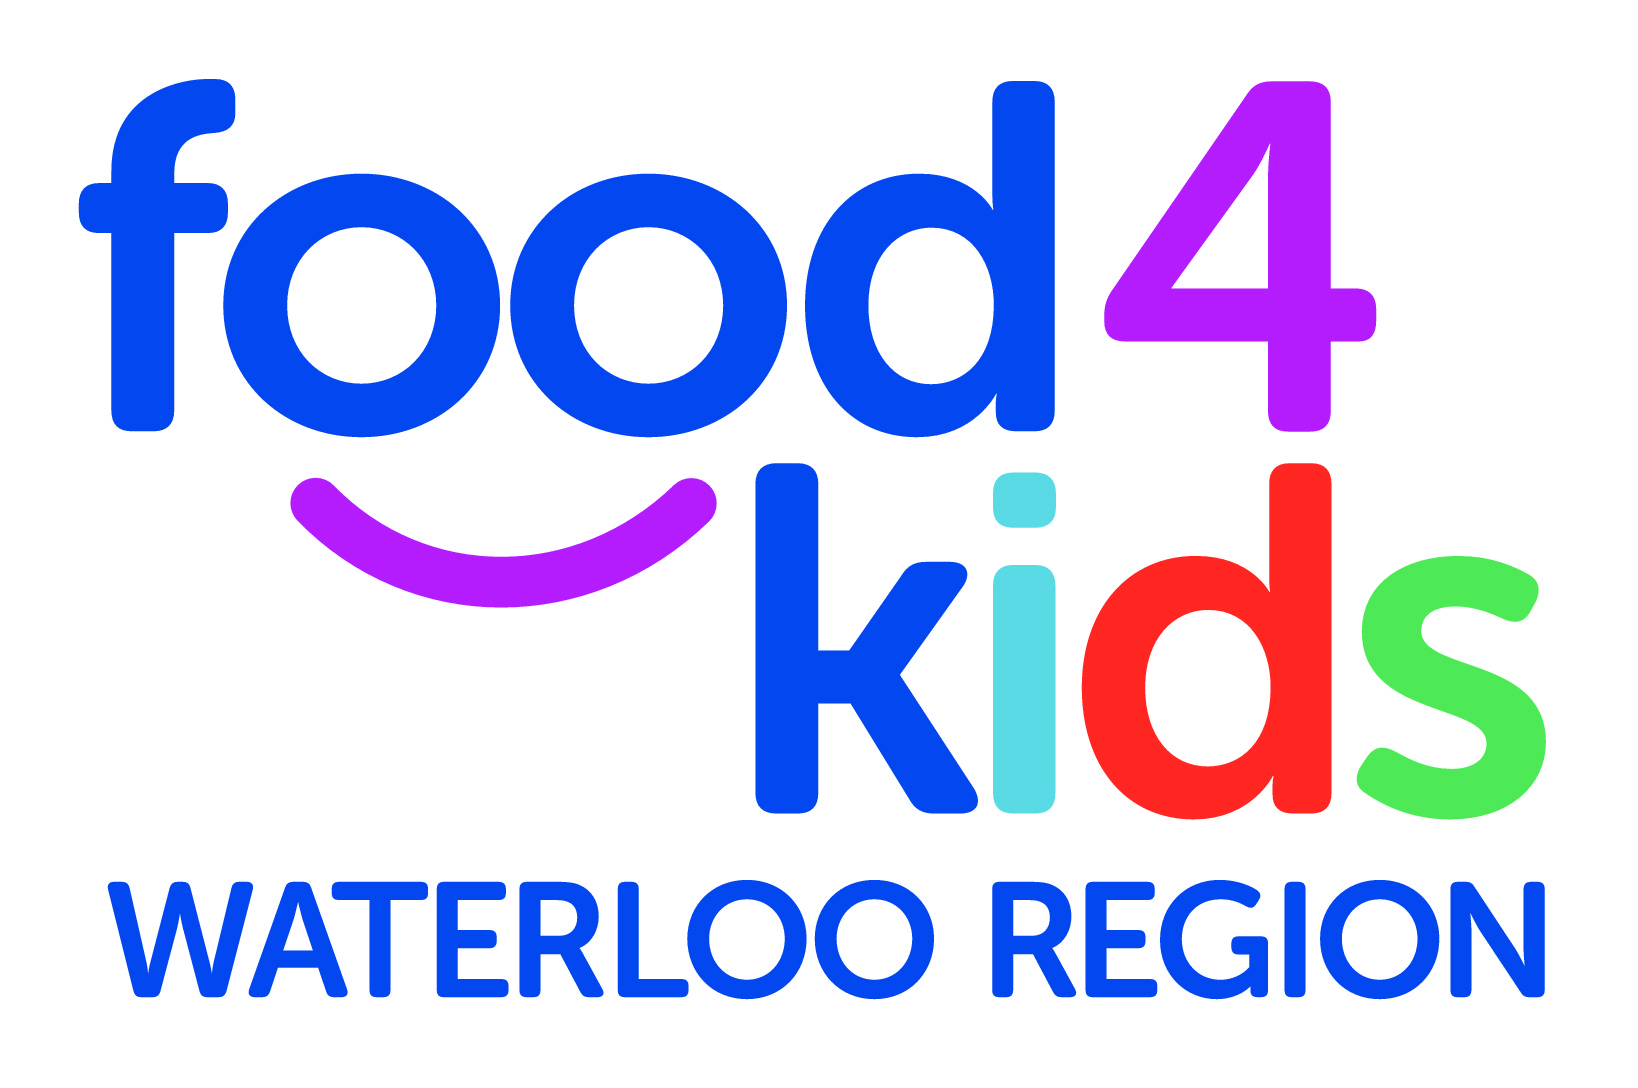 Food4Kids Waterloo Region